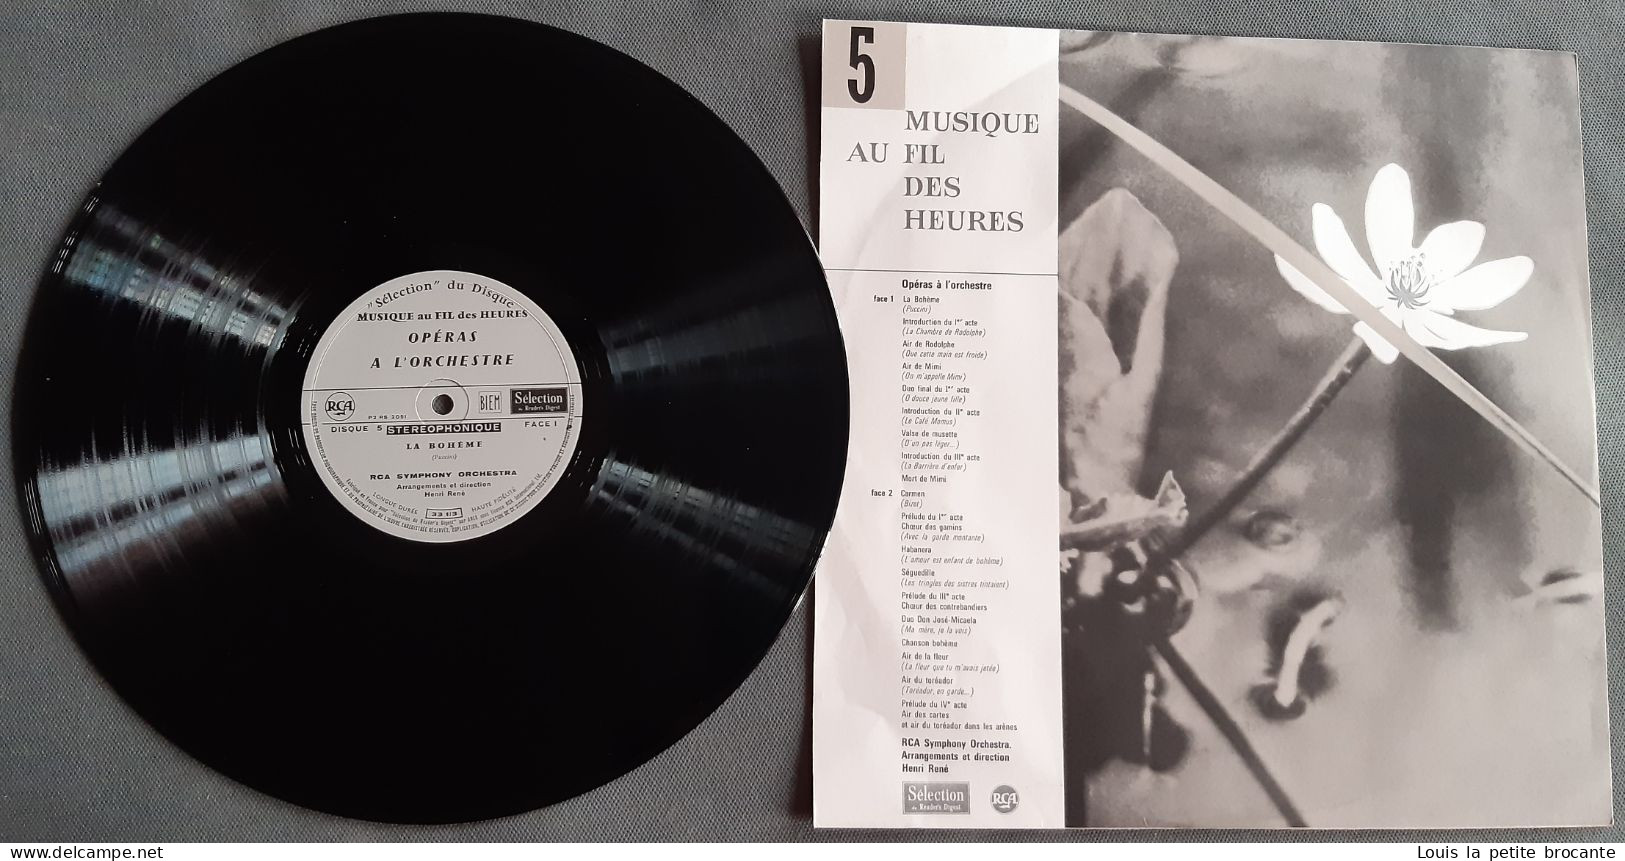 Coffret de 10 disques "Musique au Fil des Heures". 33 tours stéréo. RCA , Sélection du Reader's Digest. 33cm x 33cm x4cm